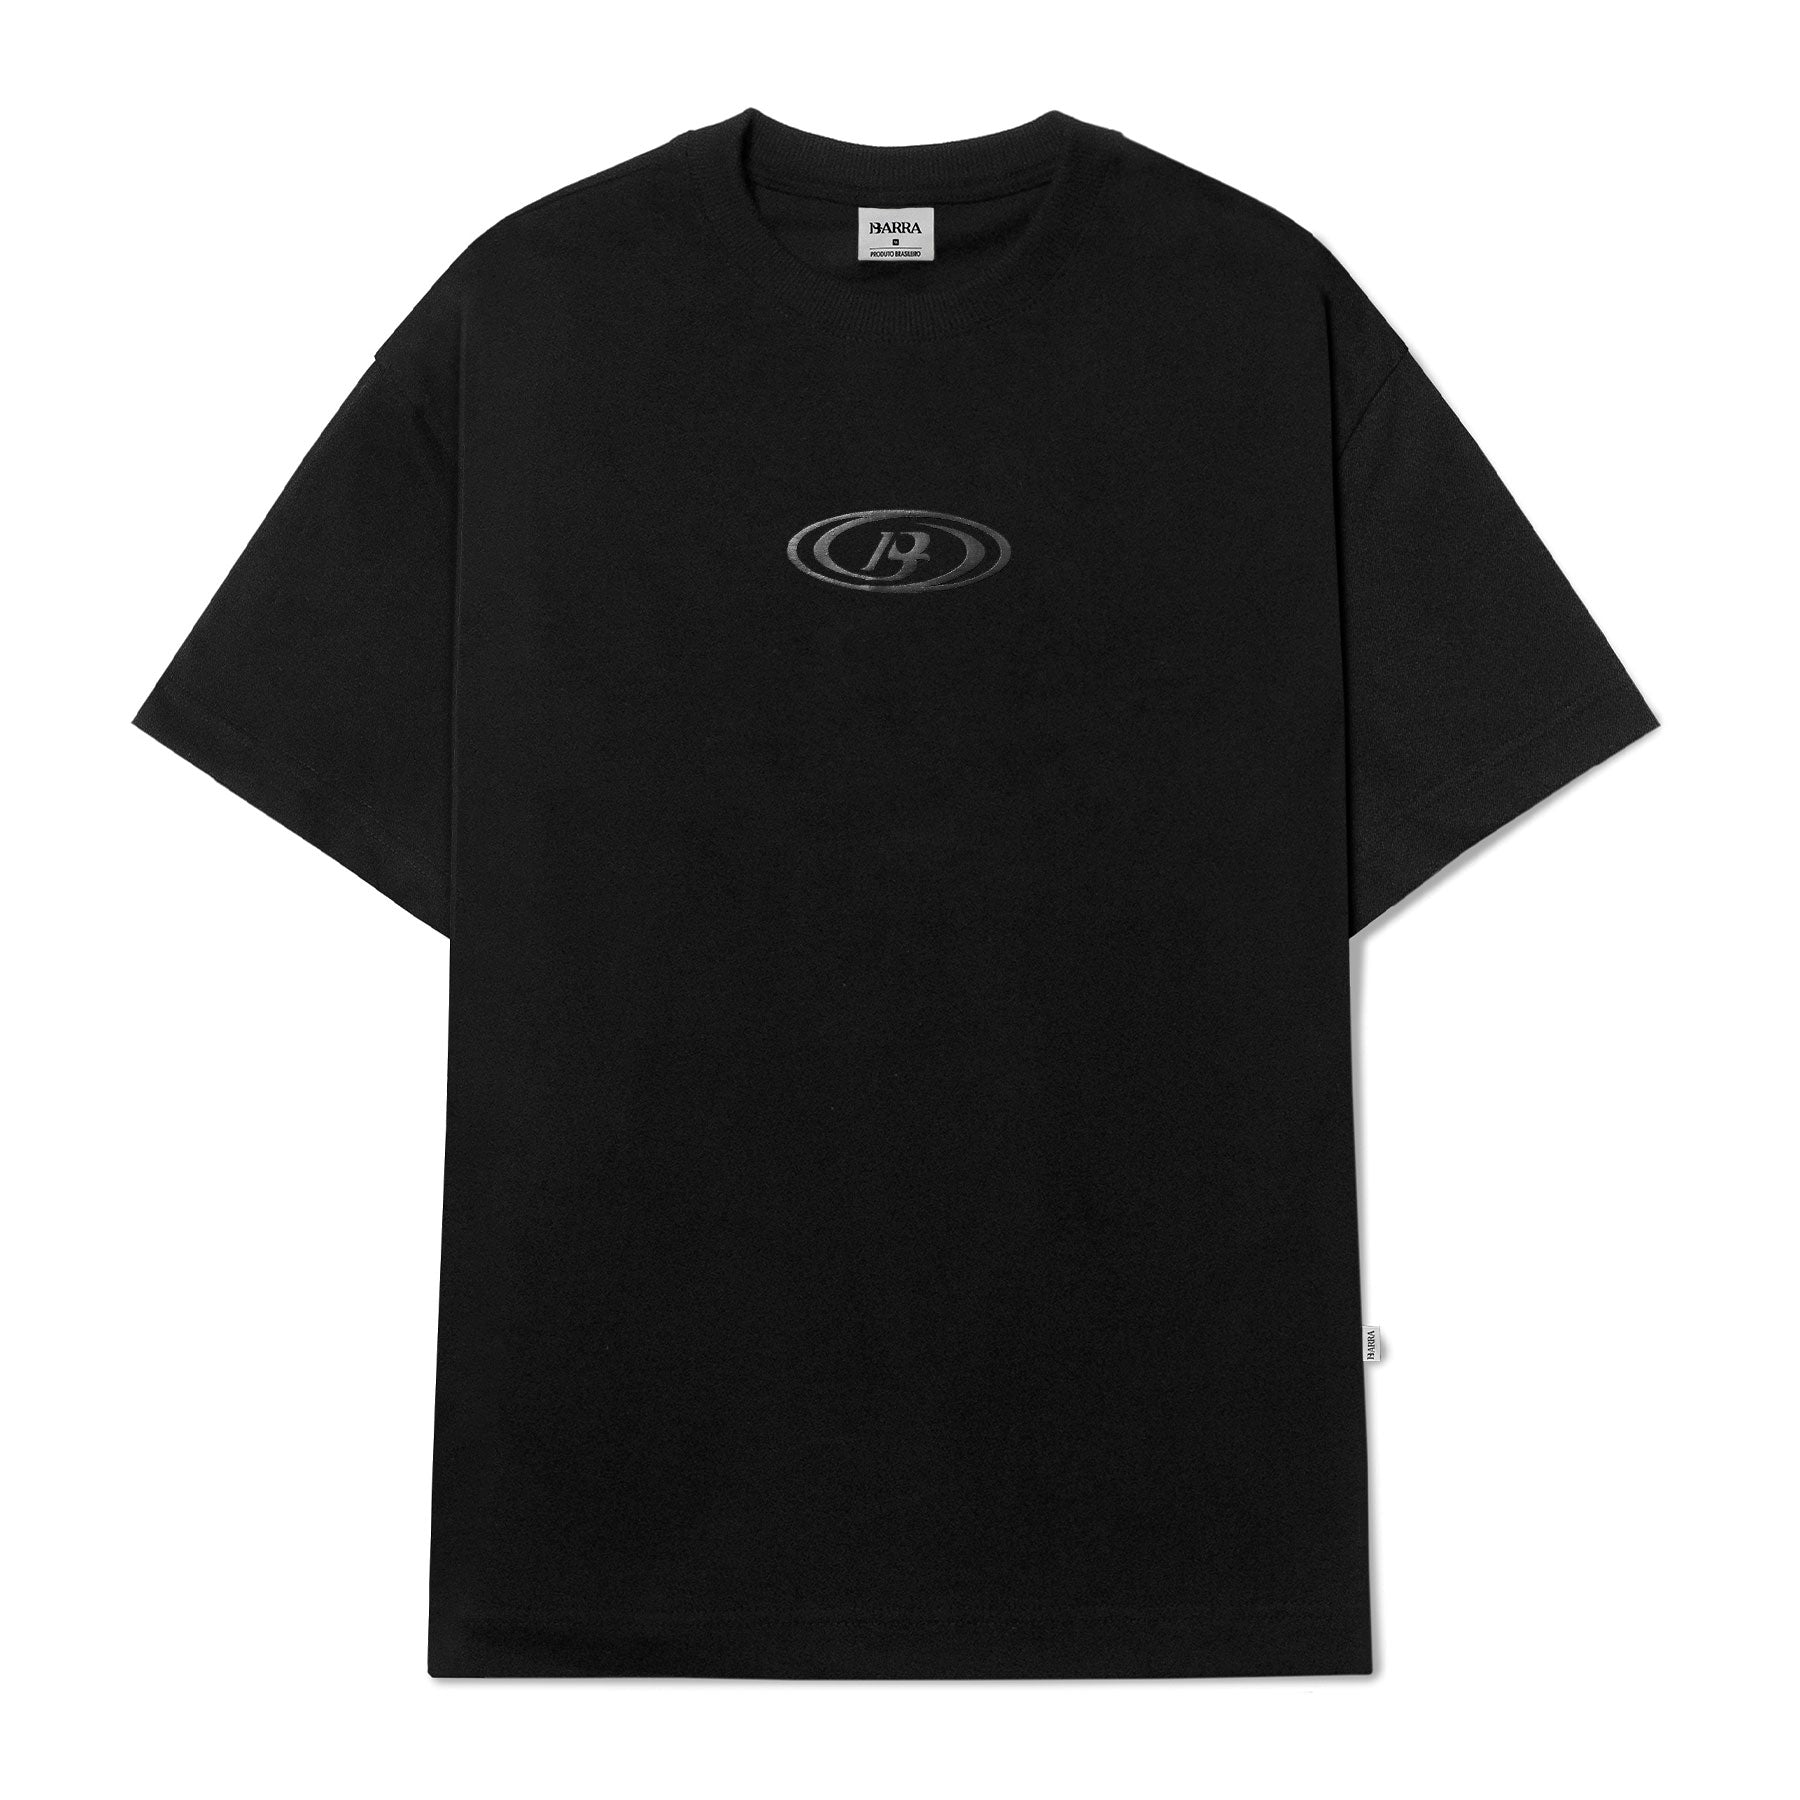 Barra Crew - Camiseta Goods B Preta